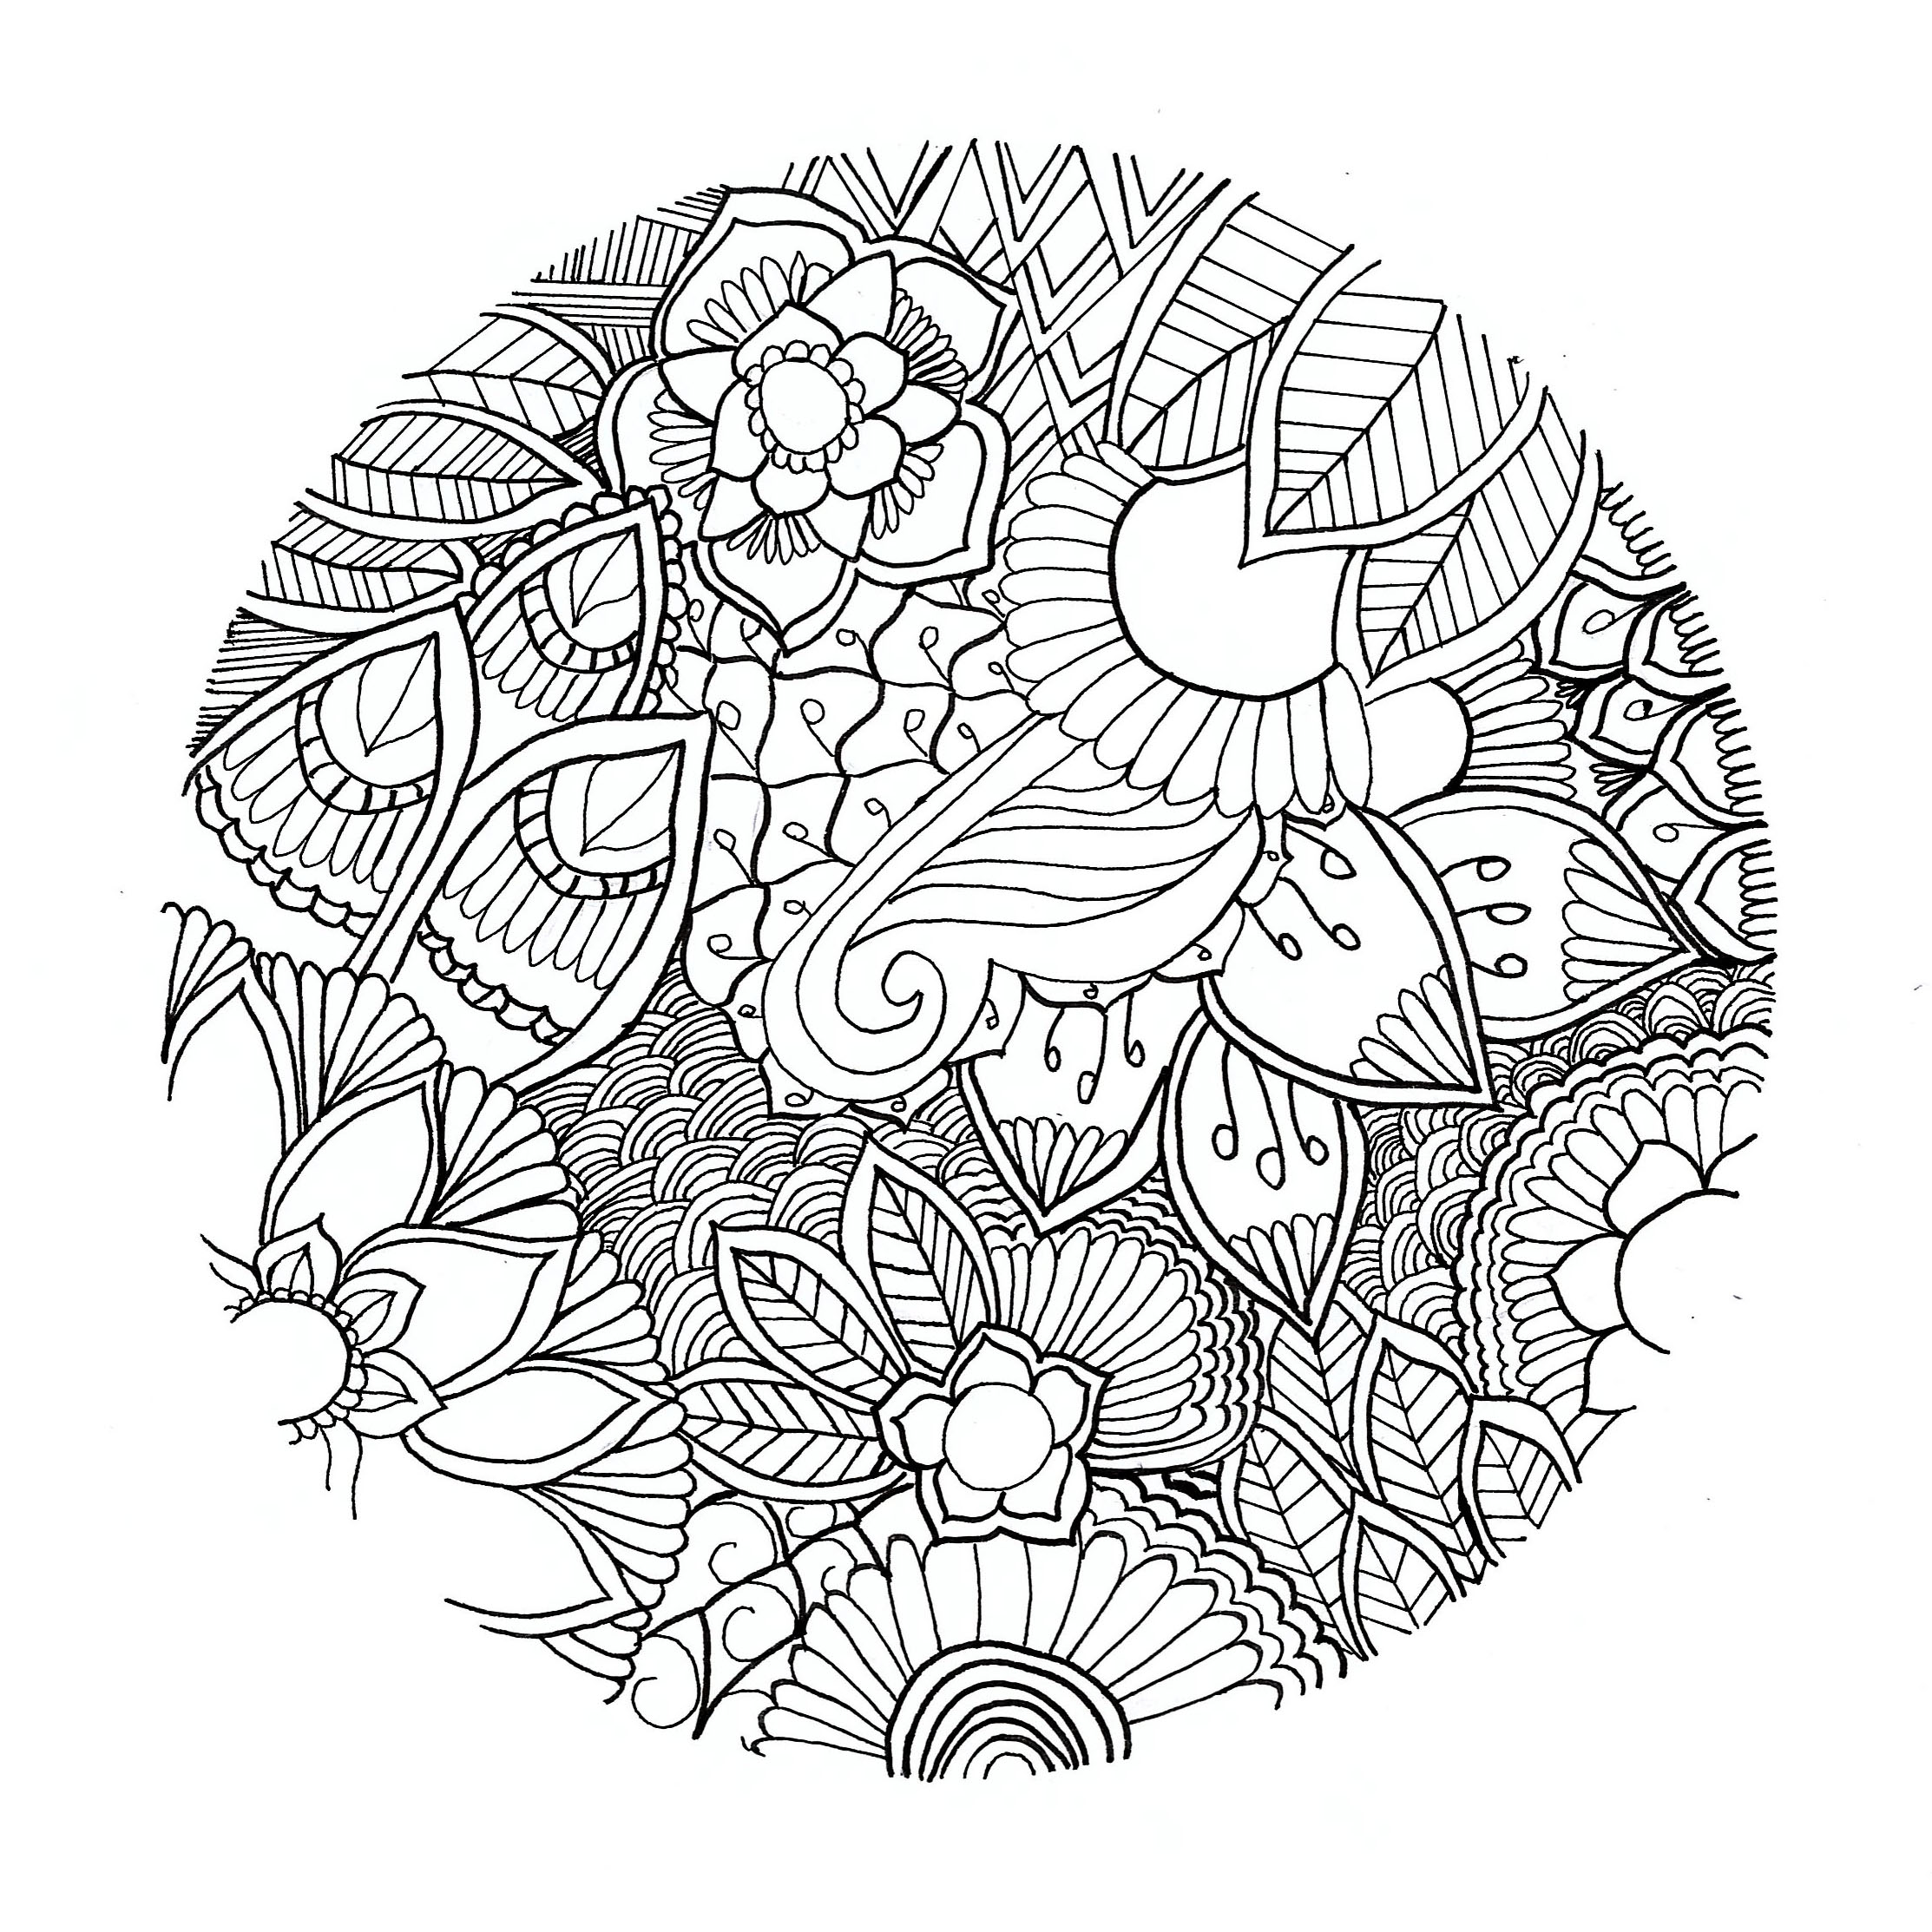 Ein originelles Blumenmandala, das sehr leicht und konturlos ist! Von Chloé. Es handelt sich um einen Kreis, in den realistisch gezeichnete, nicht symmetrische Blumen integriert sind.